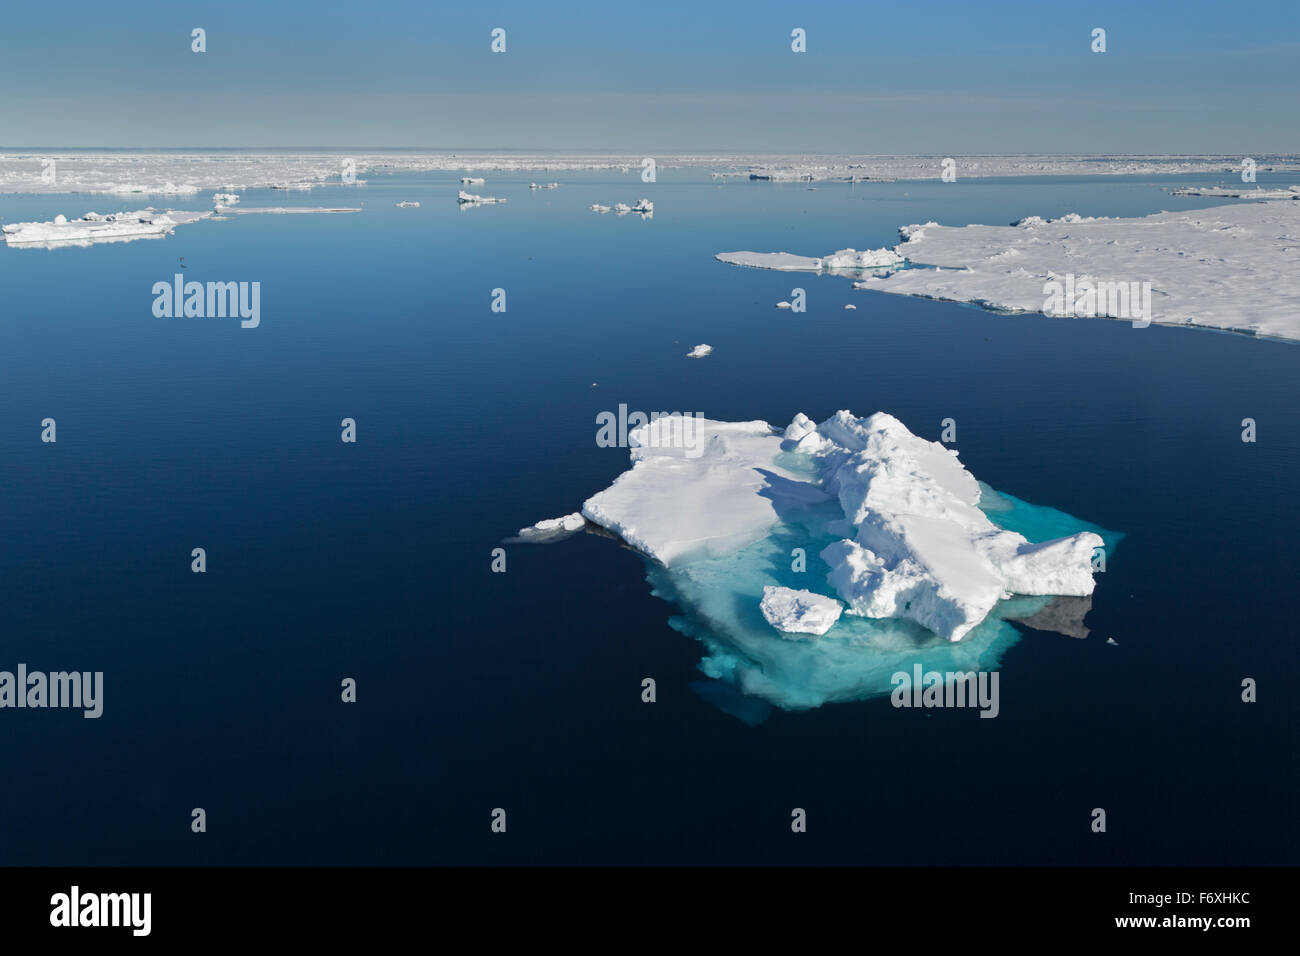 Des blocs de glace, la bordure de la banquise, l'océan Arctique, l'archipel du Svalbard, l'île de Spitsbergen, Svalbard et Jan Mayen, Norvège, Europe Banque D'Images